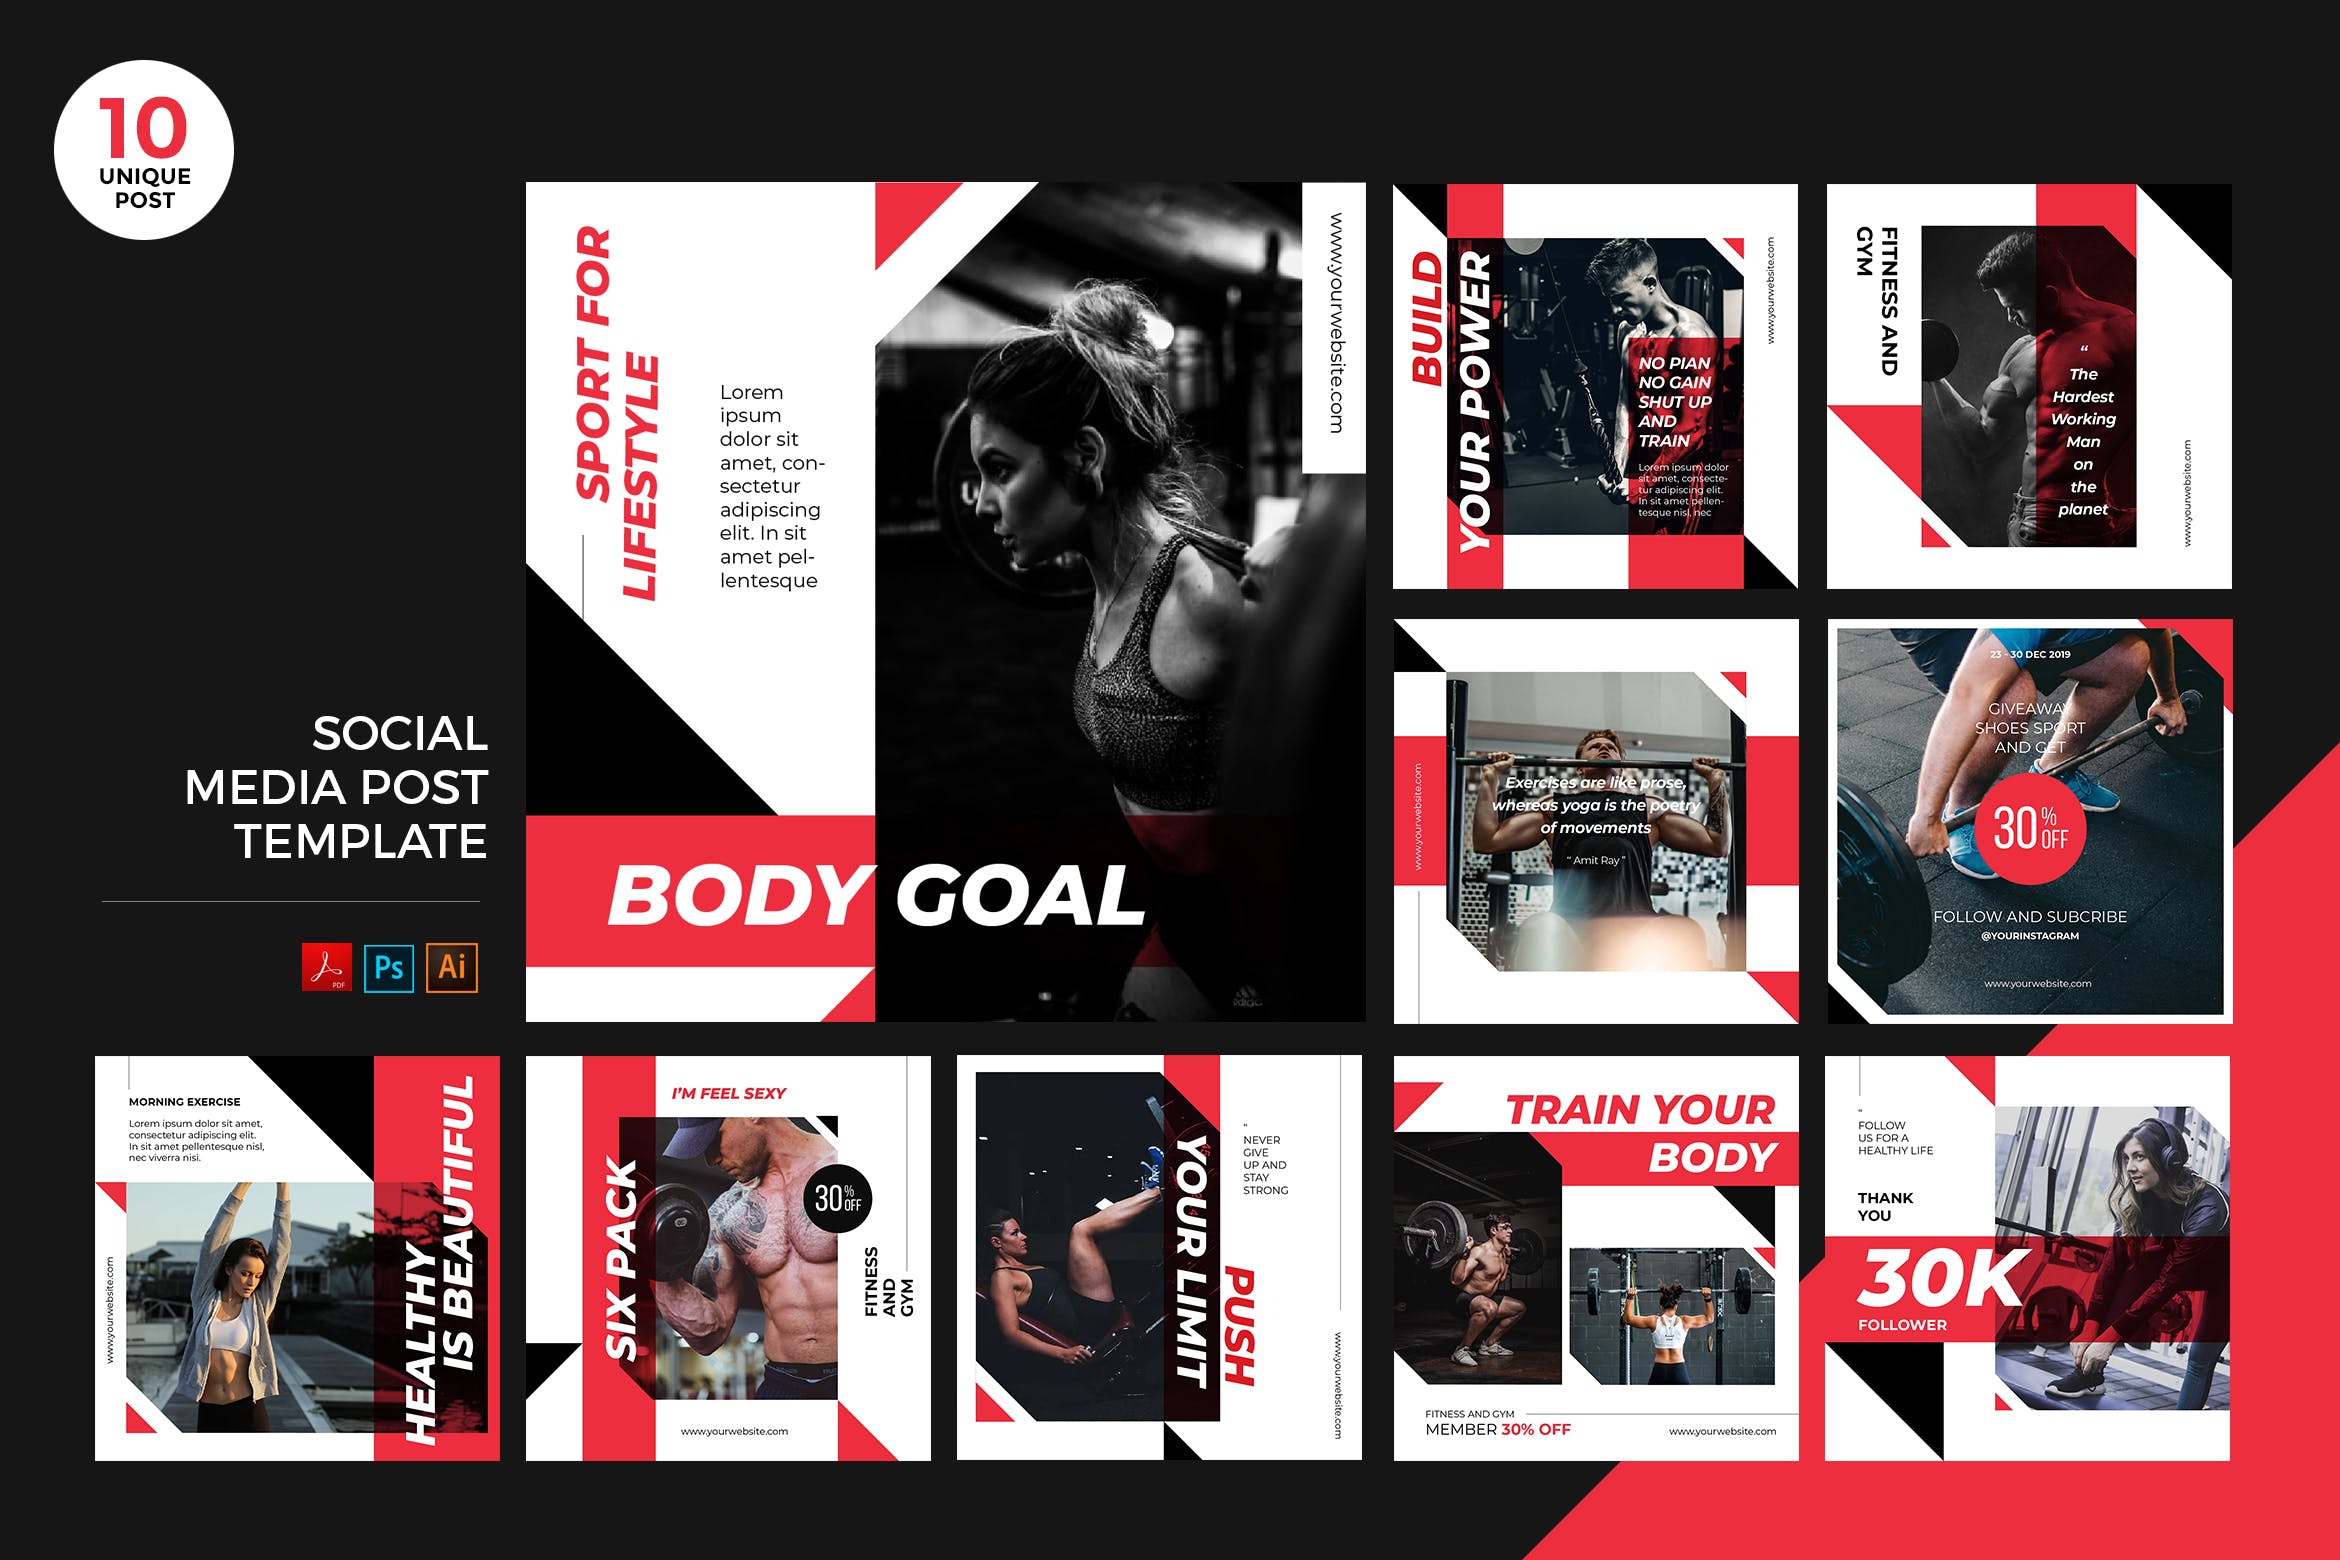 健身训练主题社交媒体设计素材包 Gym Training Social Media Kit PSD & AI Template插图